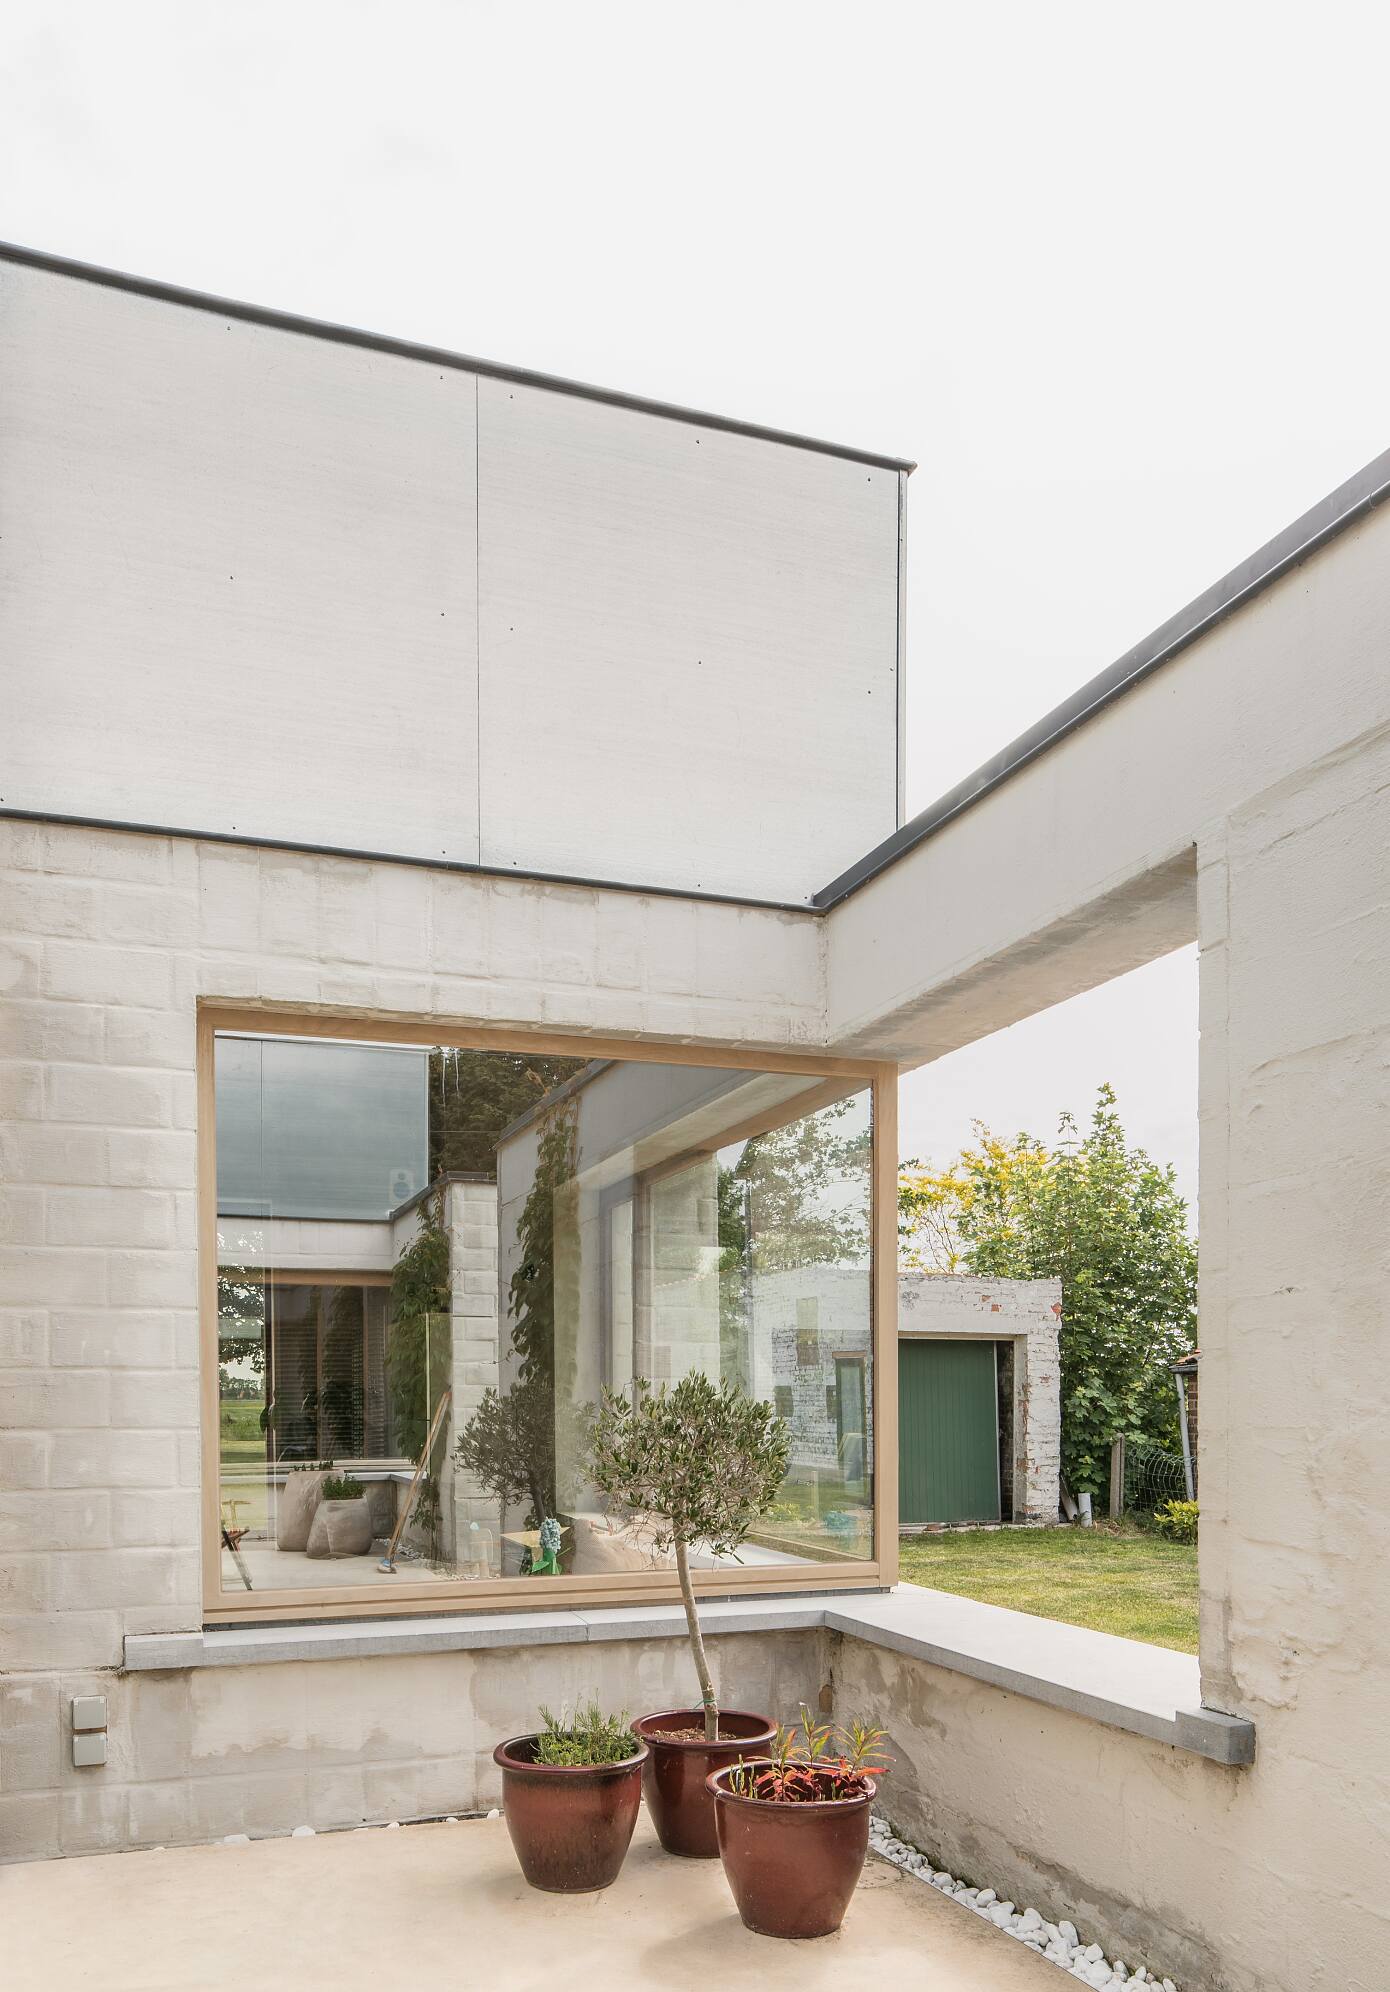 House C-VL by Graux & Baeyens Architecten